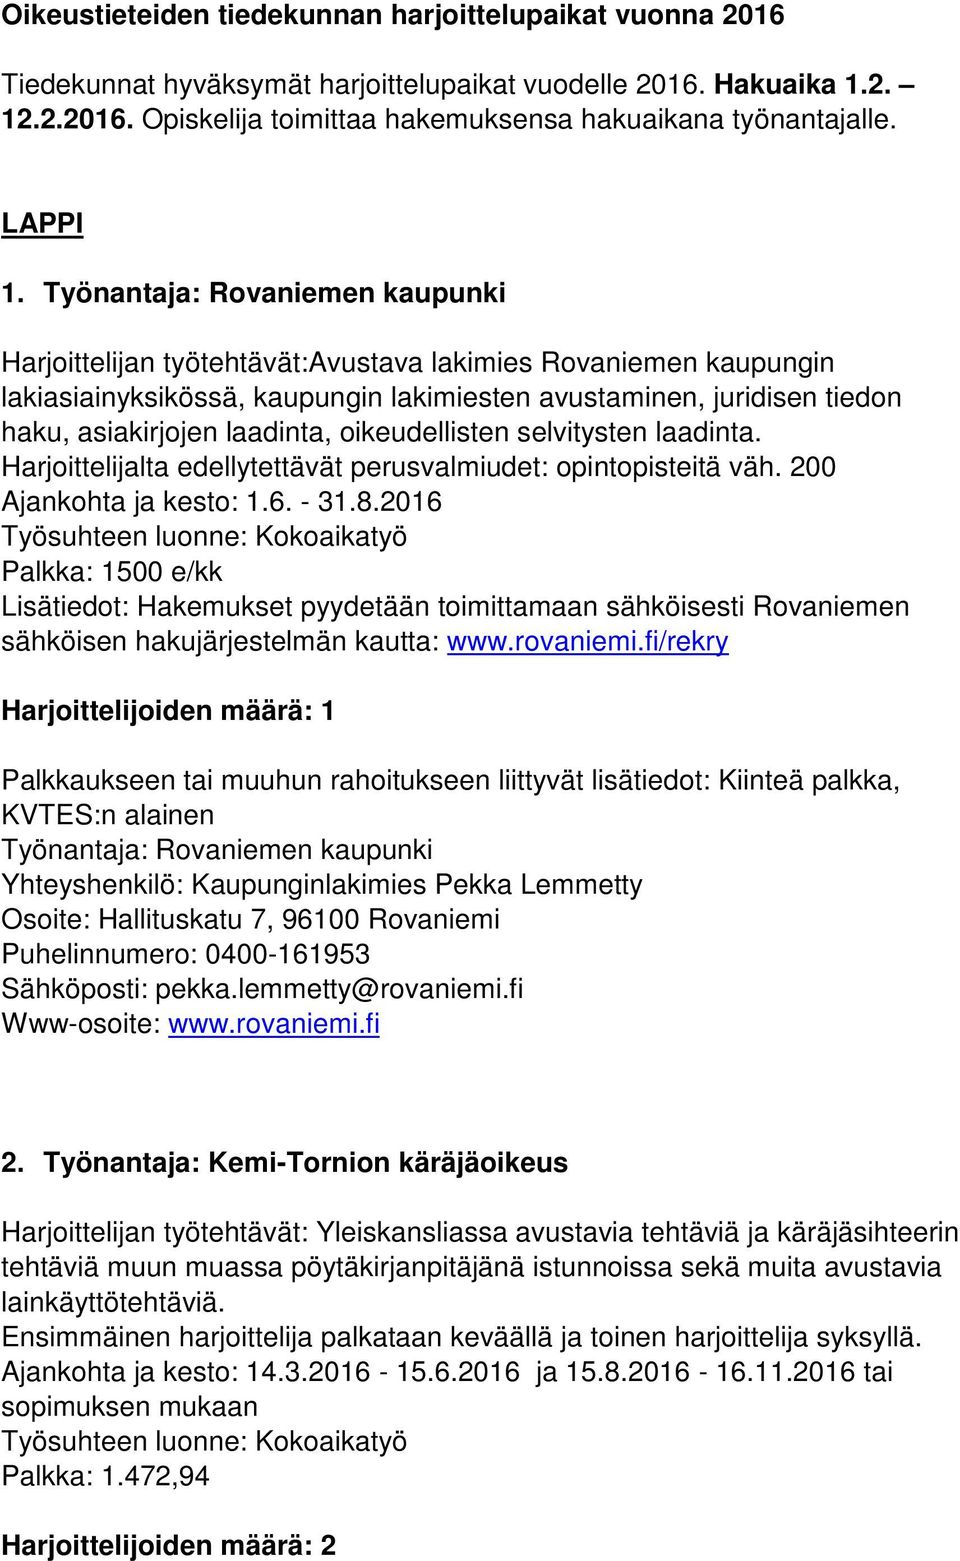 Työnantaja: Rovaniemen kaupunki Harjoittelijan työtehtävät:avustava lakimies Rovaniemen kaupungin lakiasiainyksikössä, kaupungin lakimiesten avustaminen, juridisen tiedon haku, asiakirjojen laadinta,